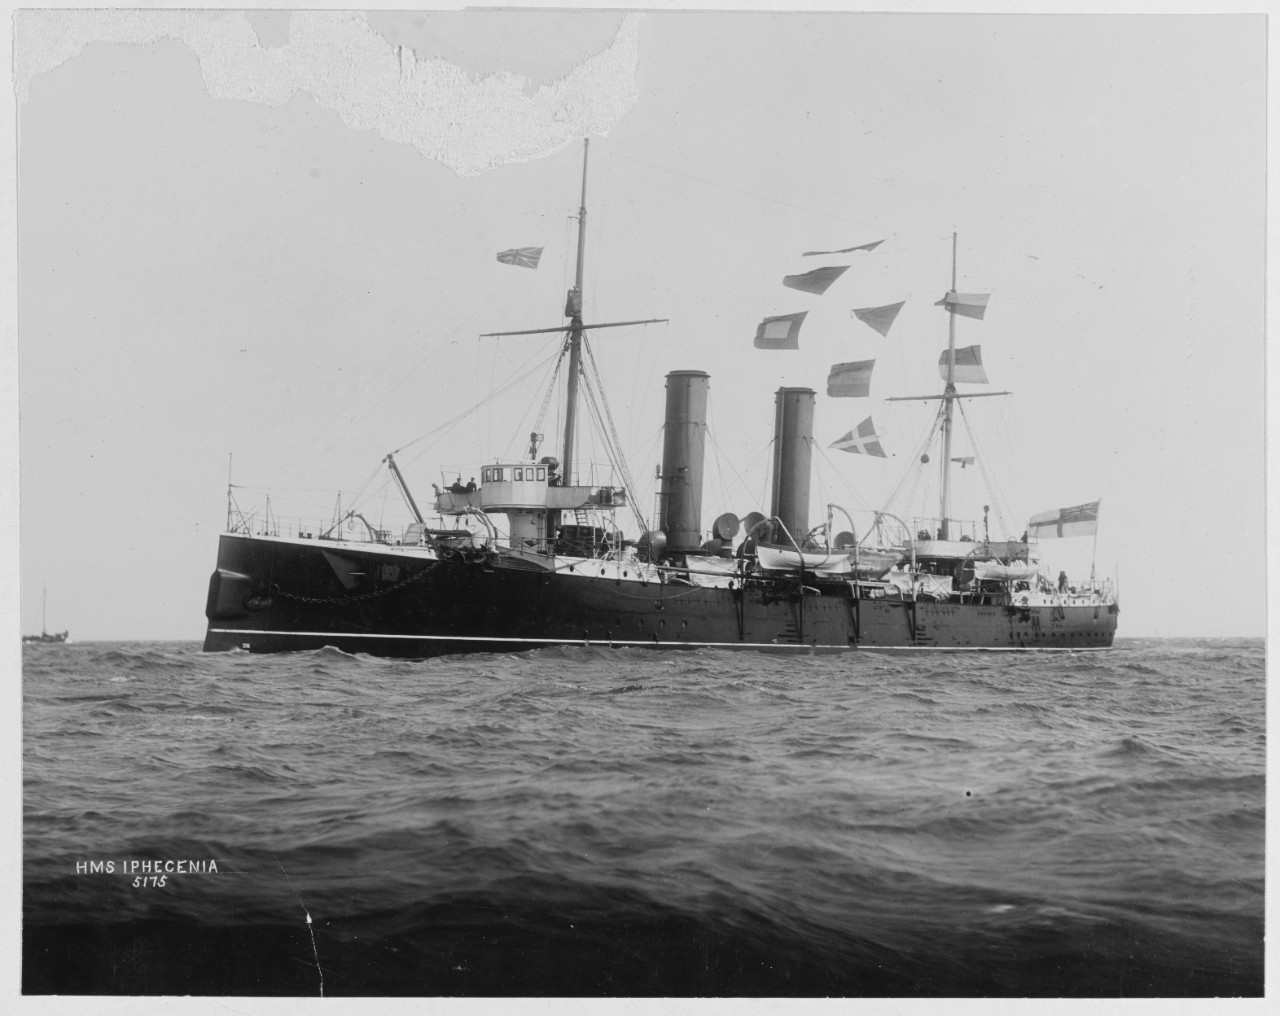 HMS IPHIGENIA (British Cruiser, 1891).  Flying signal flags